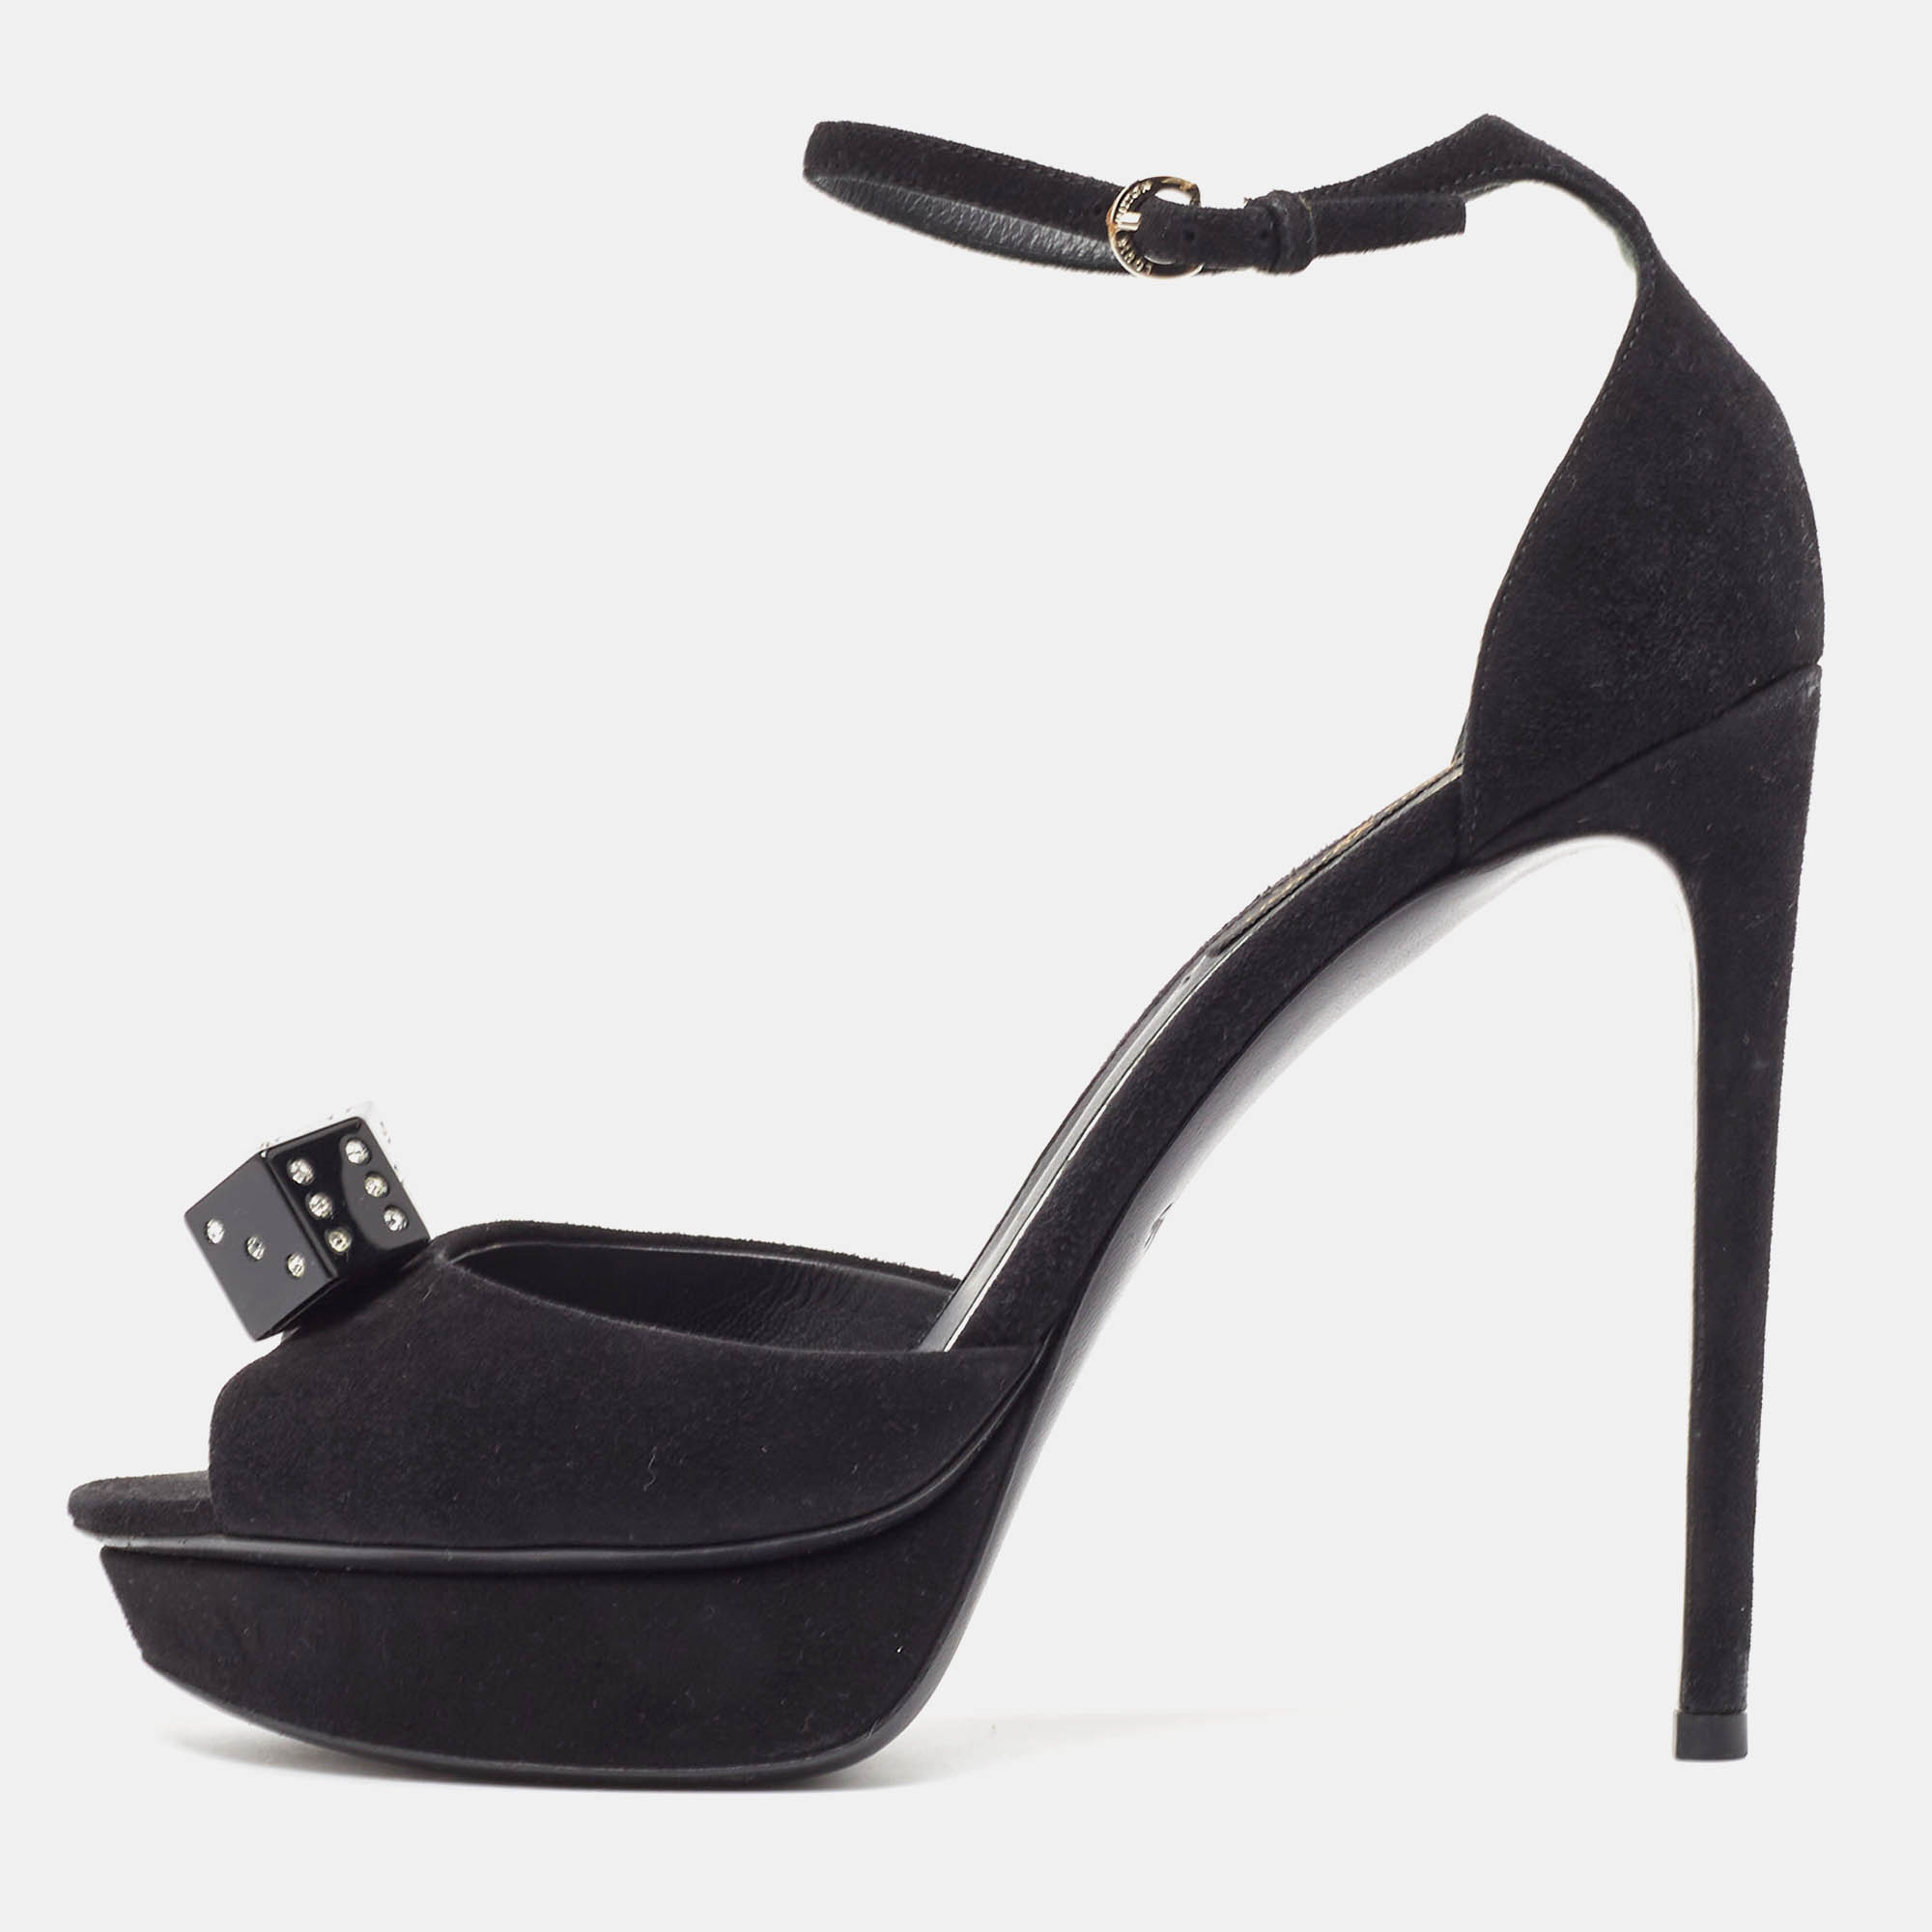 Louis vuitton black suede studded dice platform ankle strap sandals size 37.5